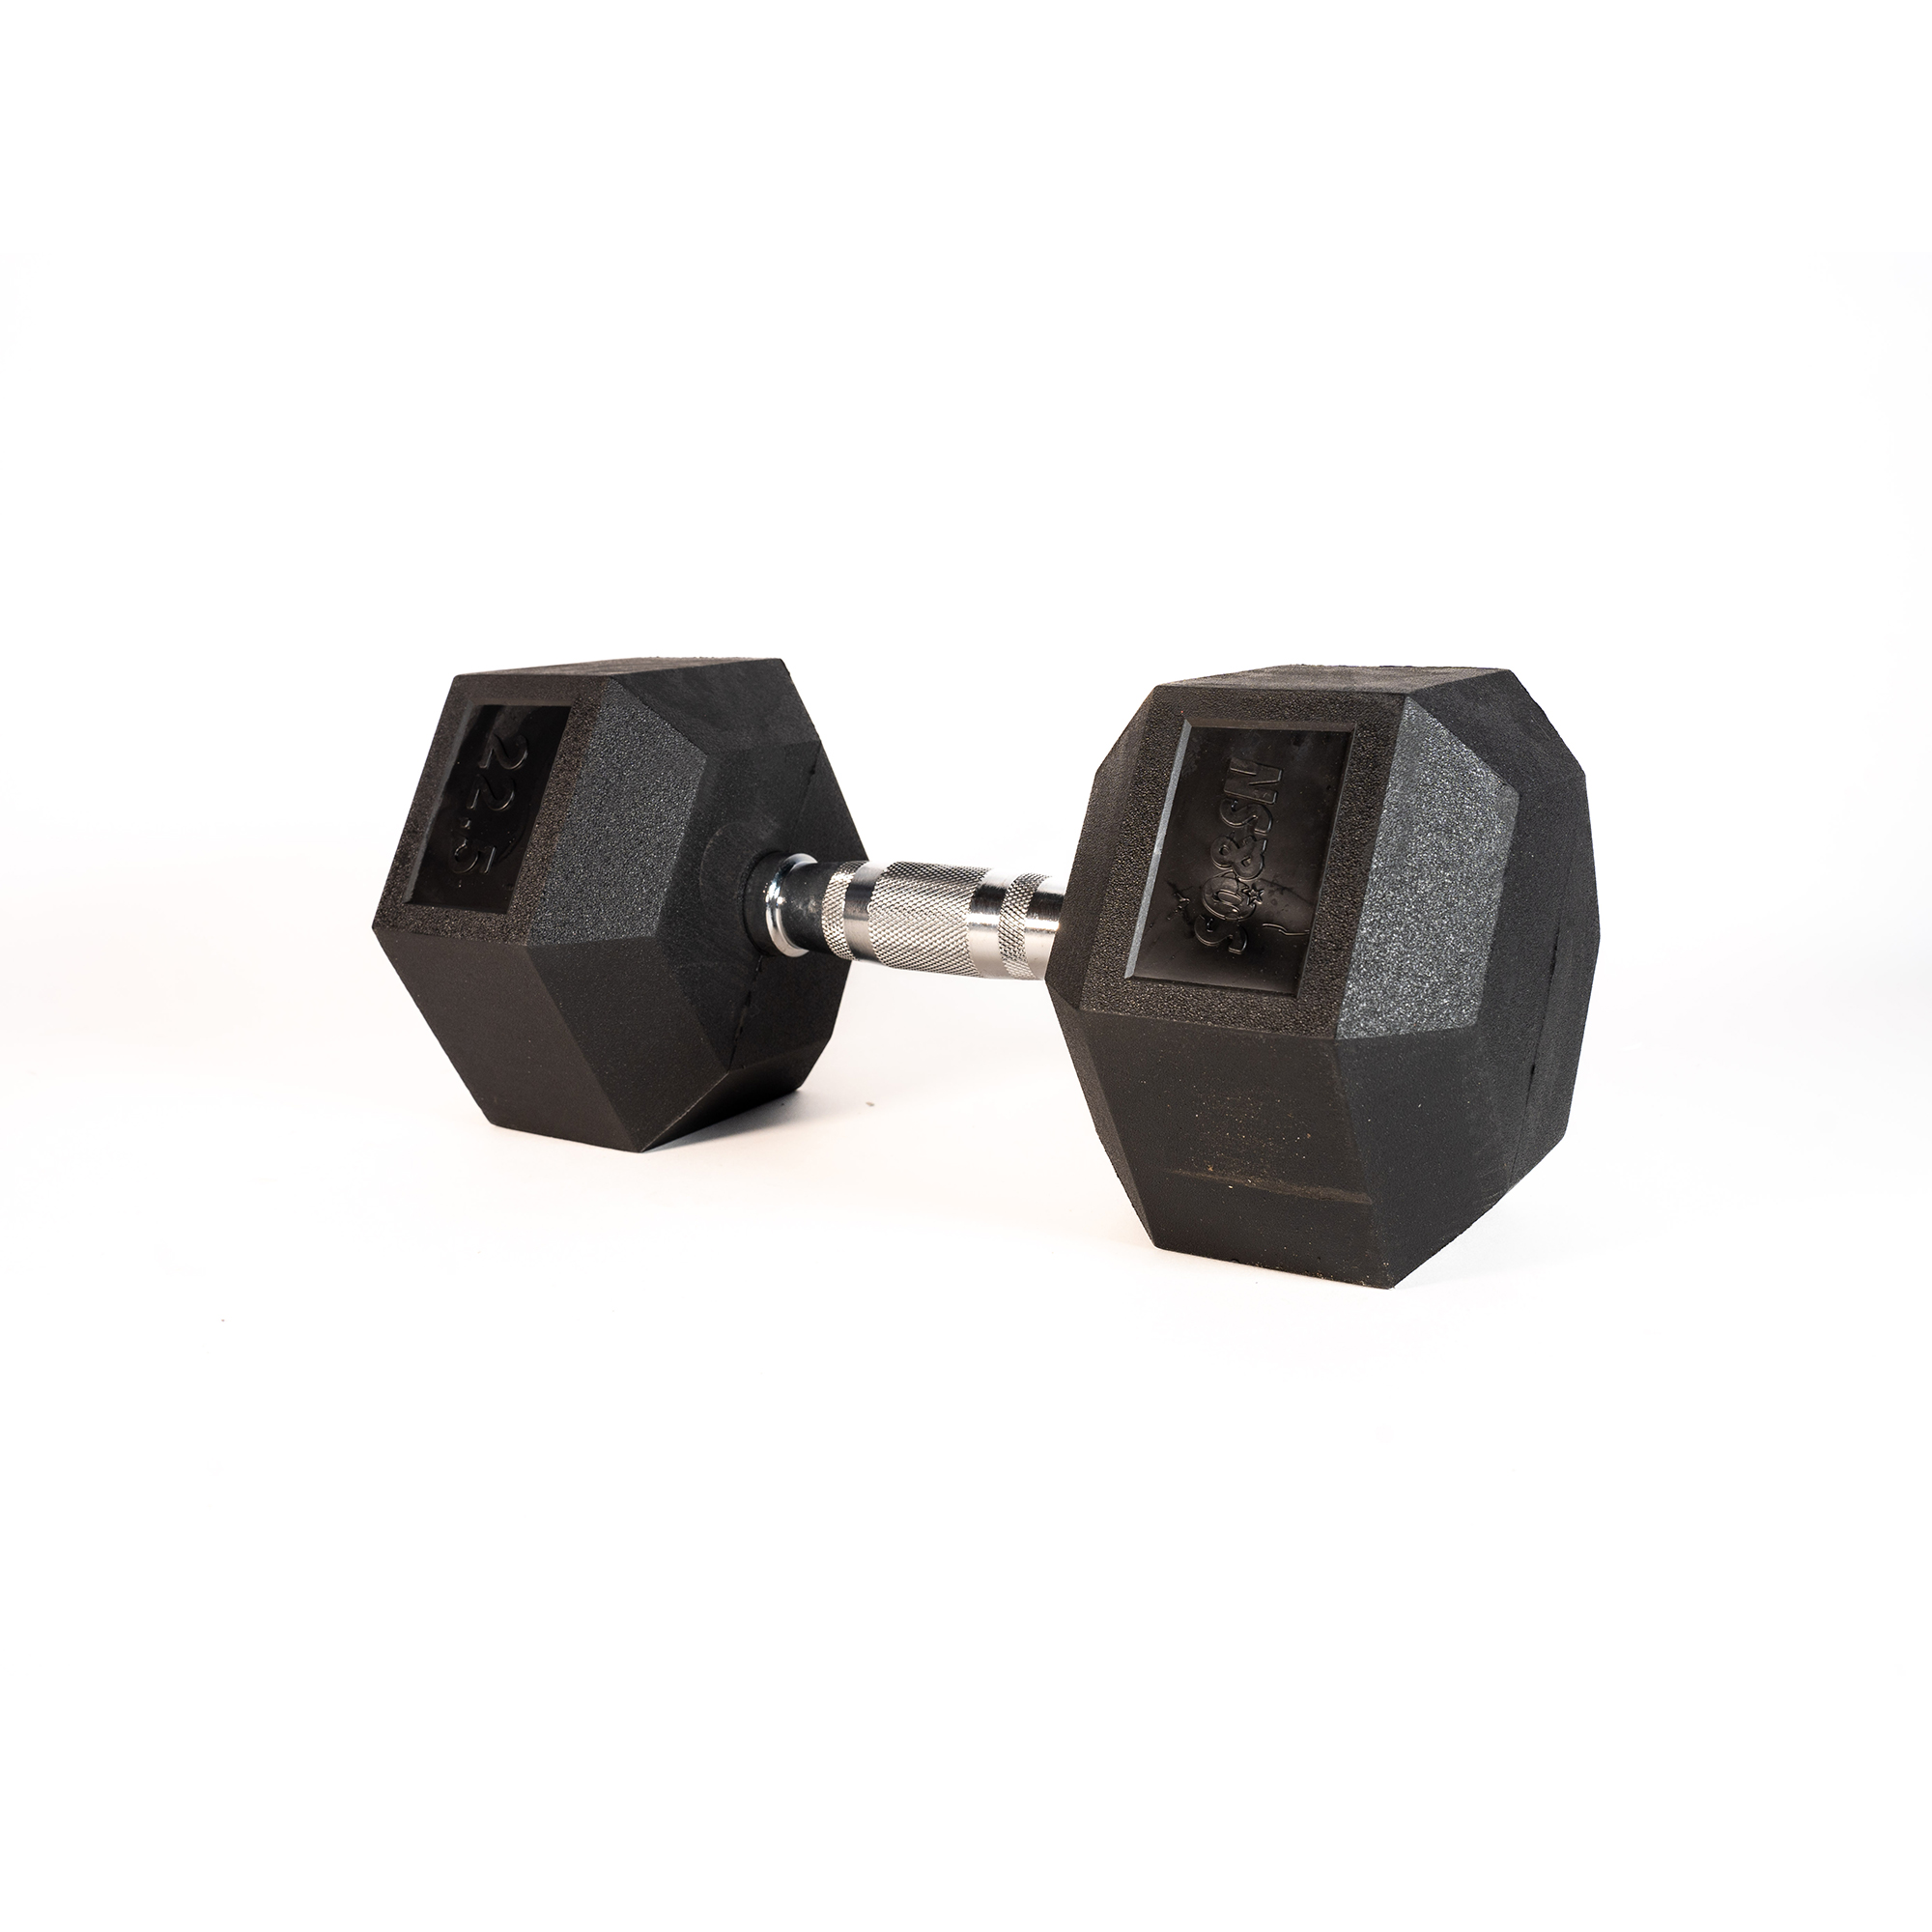 Brug SQ&SN Hexagon Håndvægt (22,5 kg) med forkromet greb. Udstyr til crossfit træning, styrketræning og funktionel træning til en forbedret oplevelse